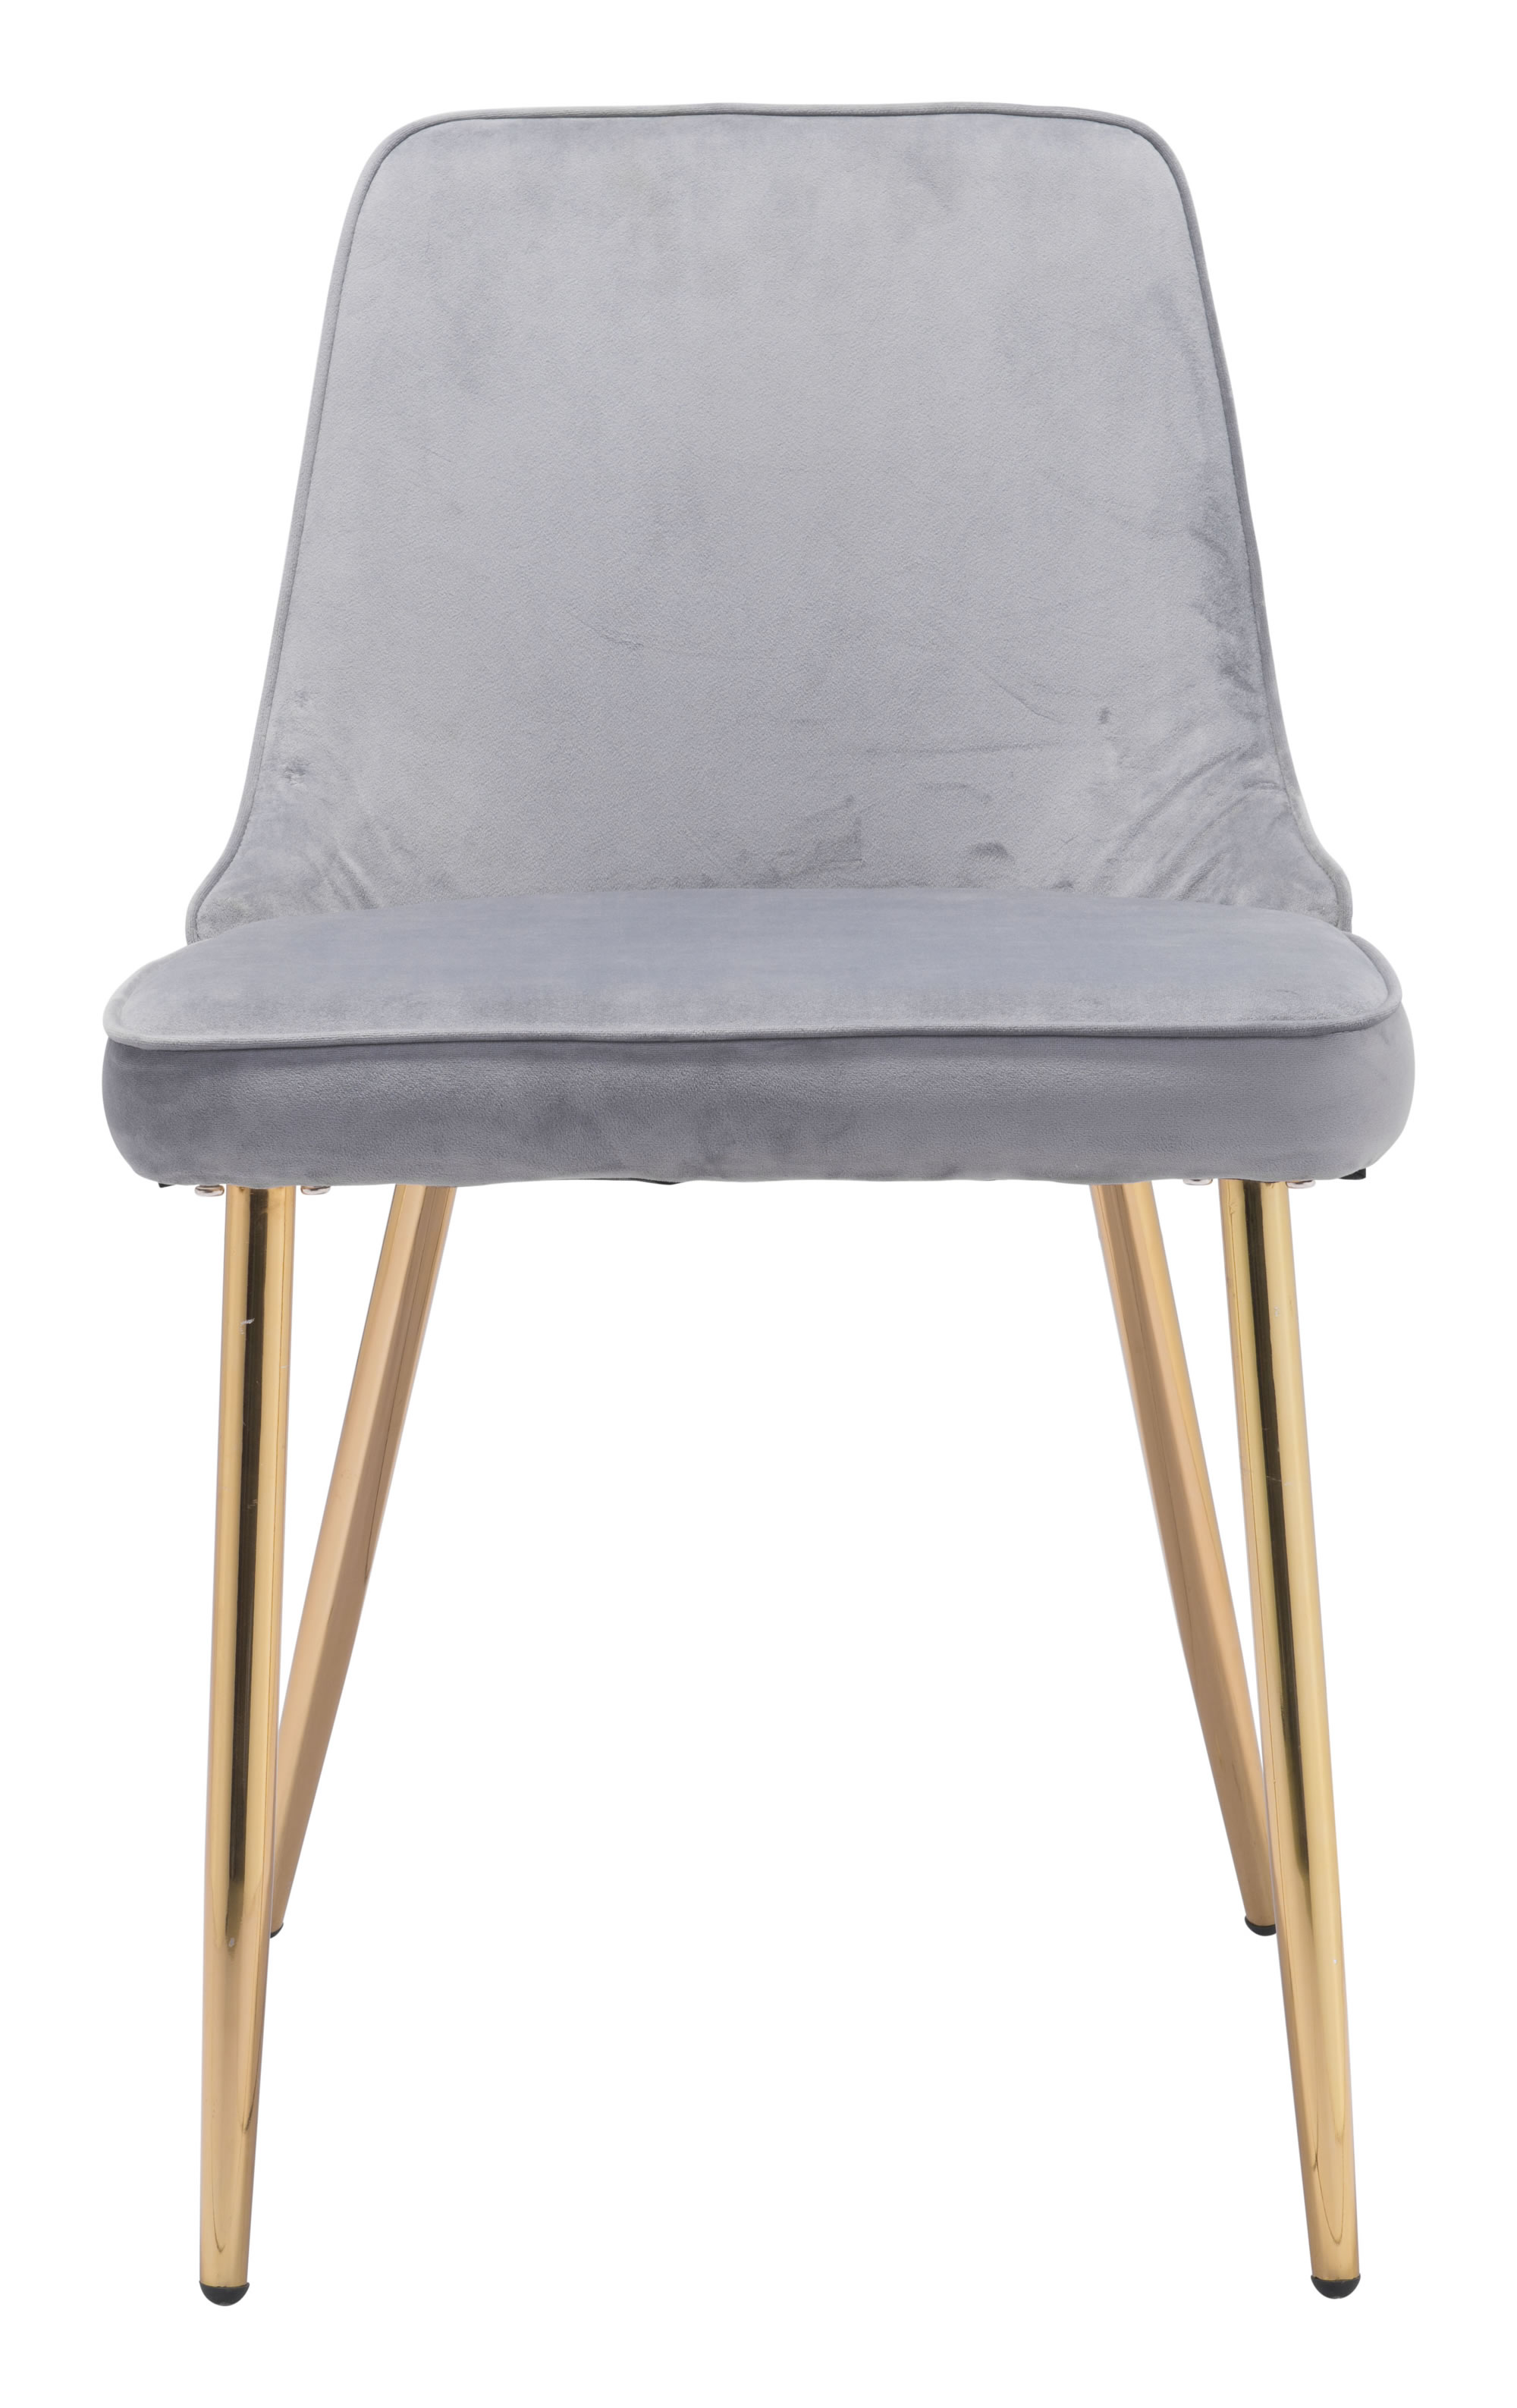 19.7" x 24.2" x 33.5" Gray, Velvet, Steel, Dining Chair